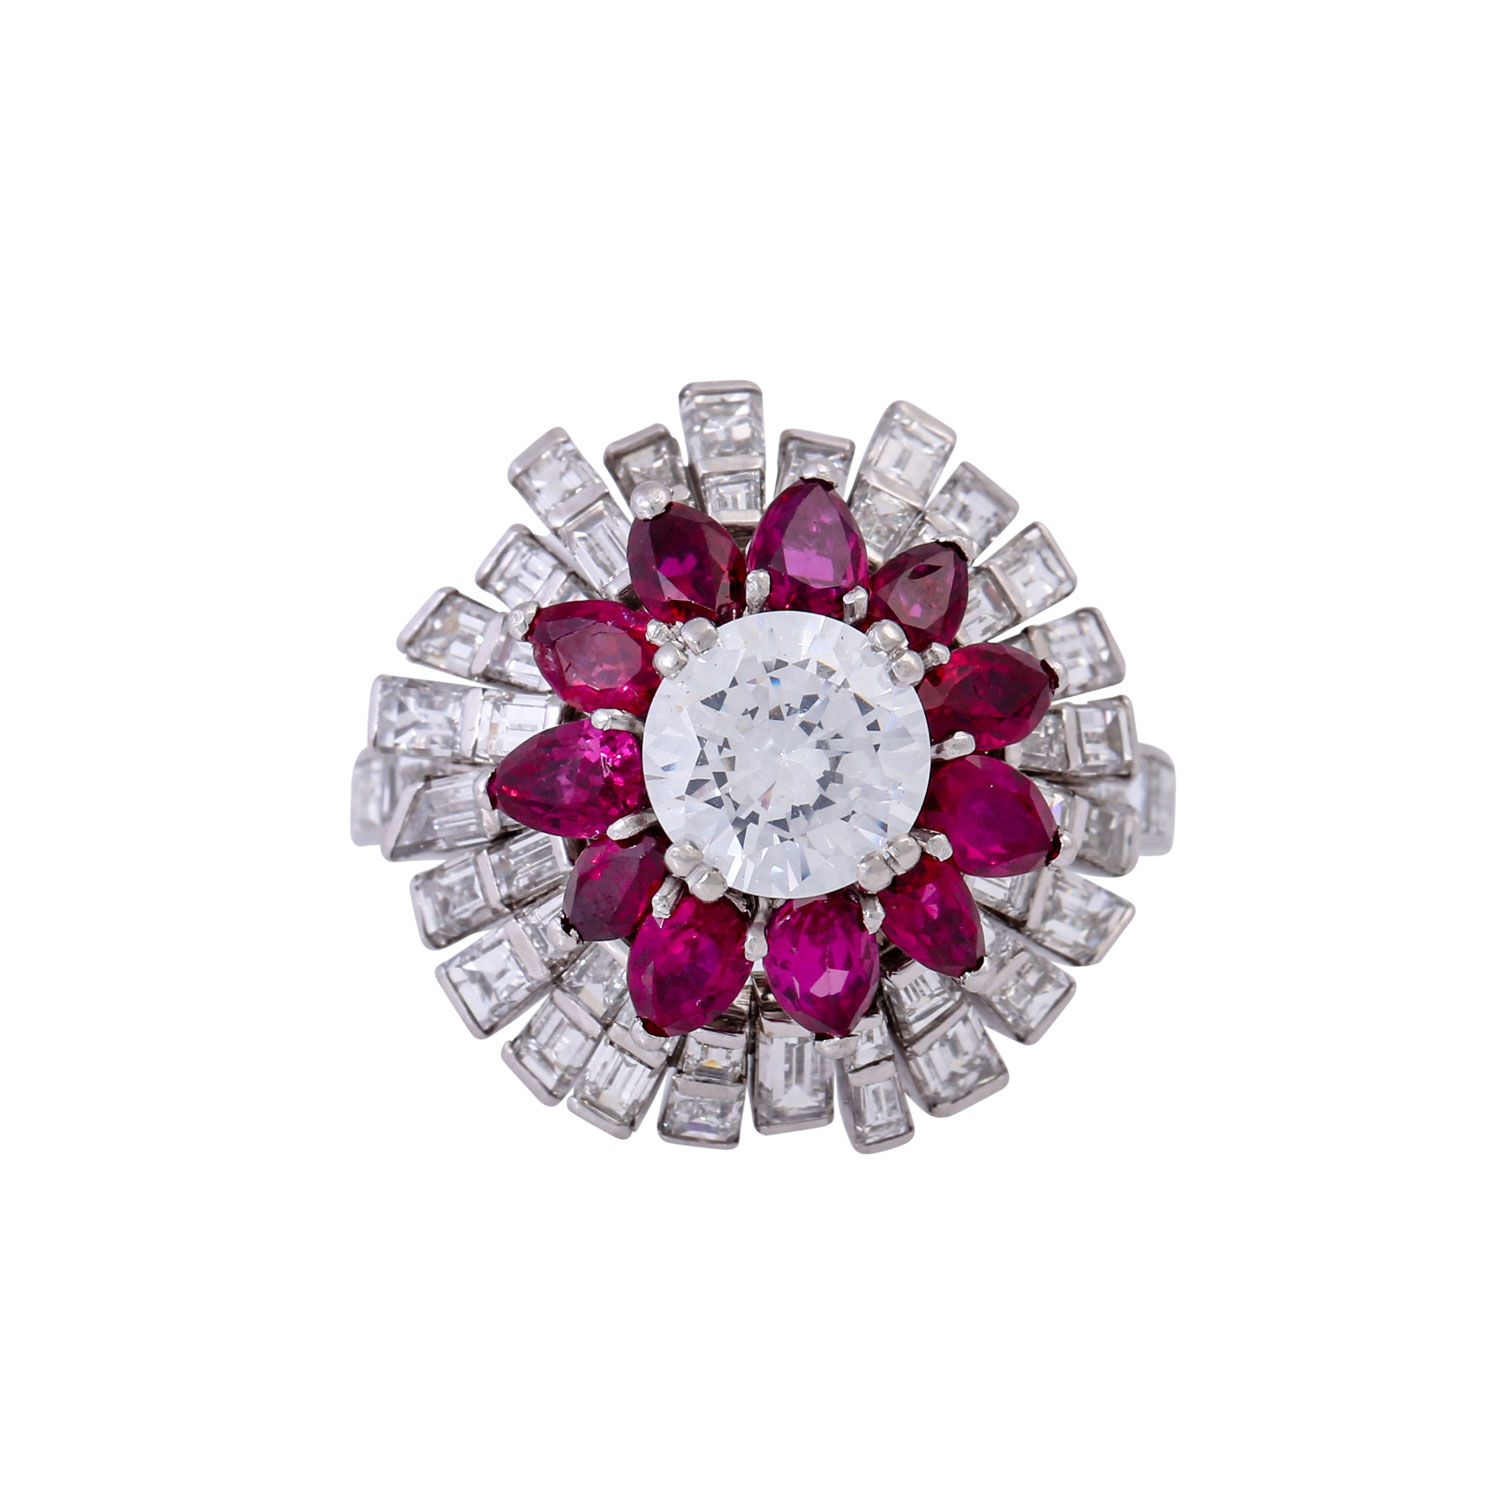 RENÉ KERN Ring mit Rubinen und Diamanten von zus. ca. 3,9 ct, - Image 2 of 5